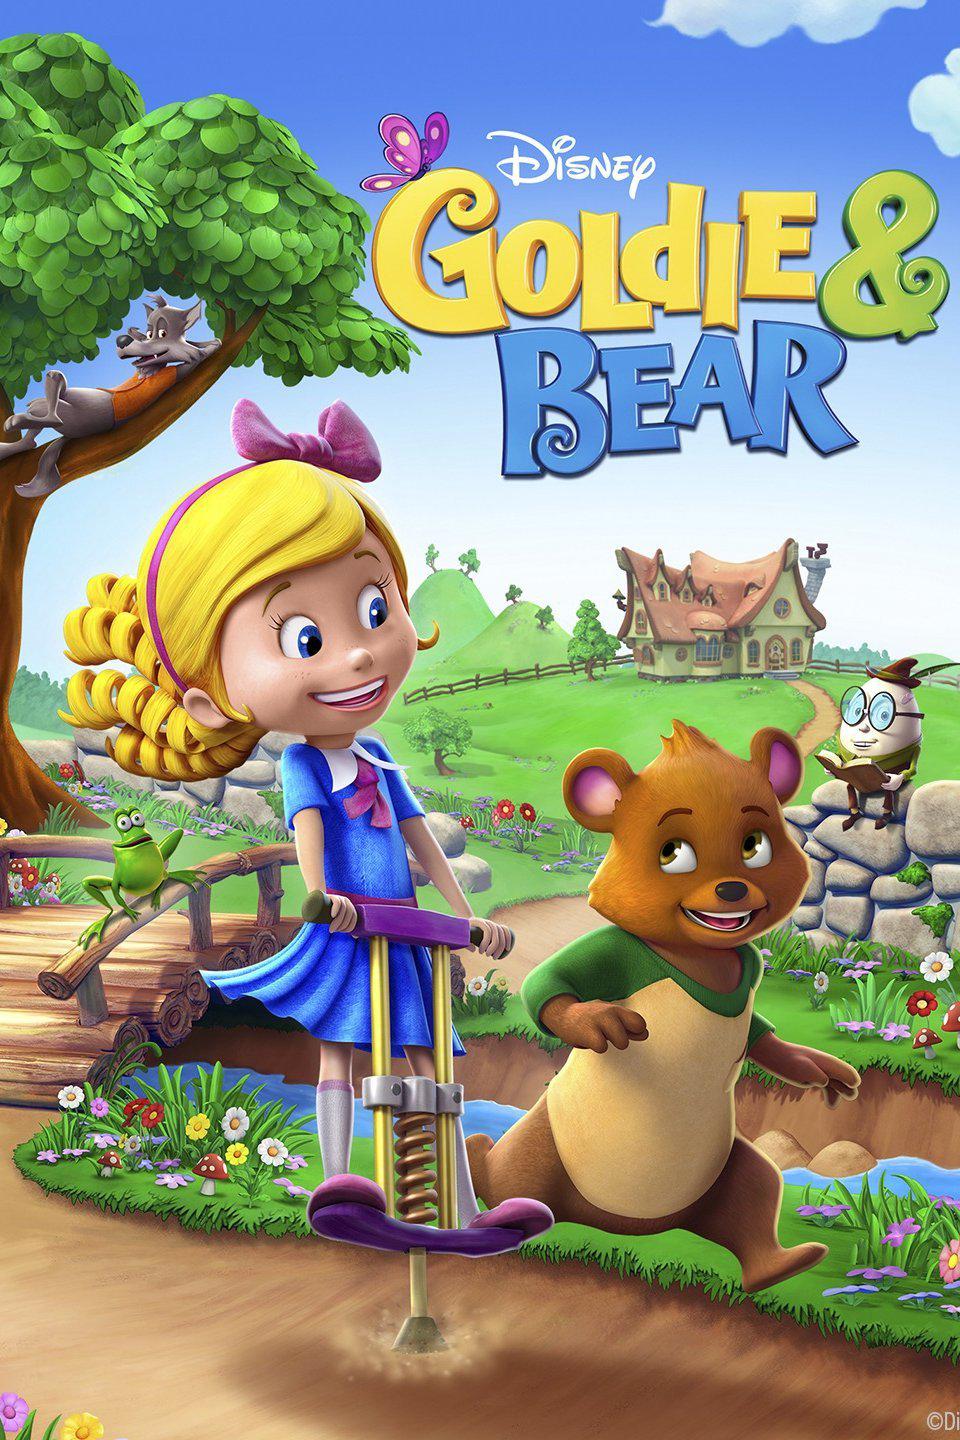 TV ratings for Goldie & Bear in South Korea. Disney Junior TV series